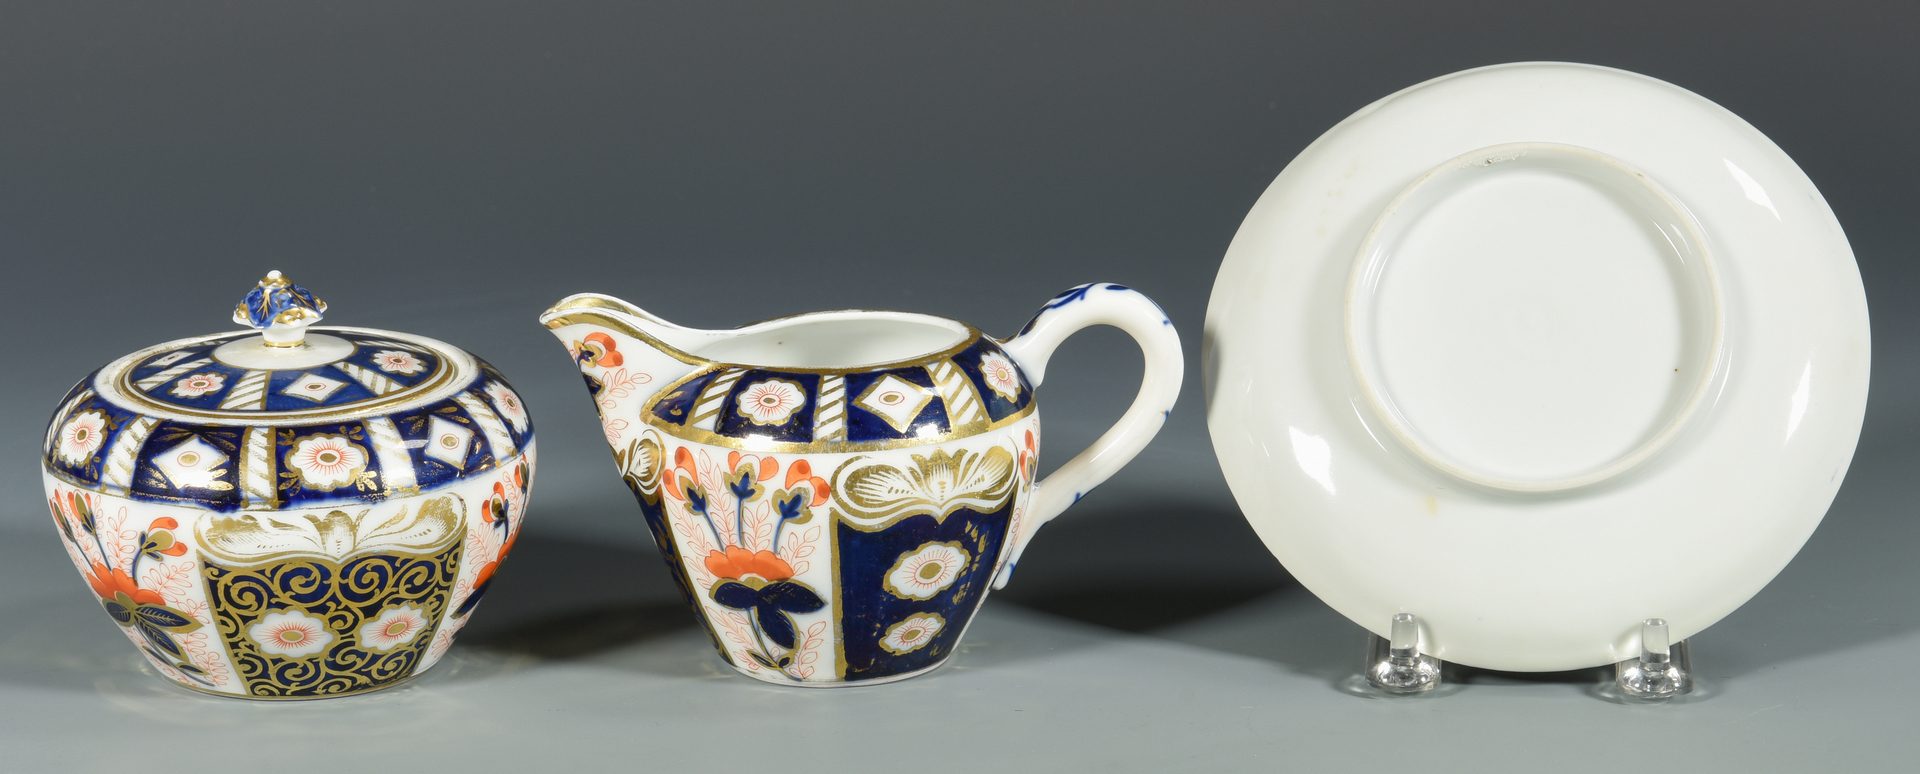 Lot 681: 13 pcs English Imari style Porcelain, 19th c.-early 20th c.